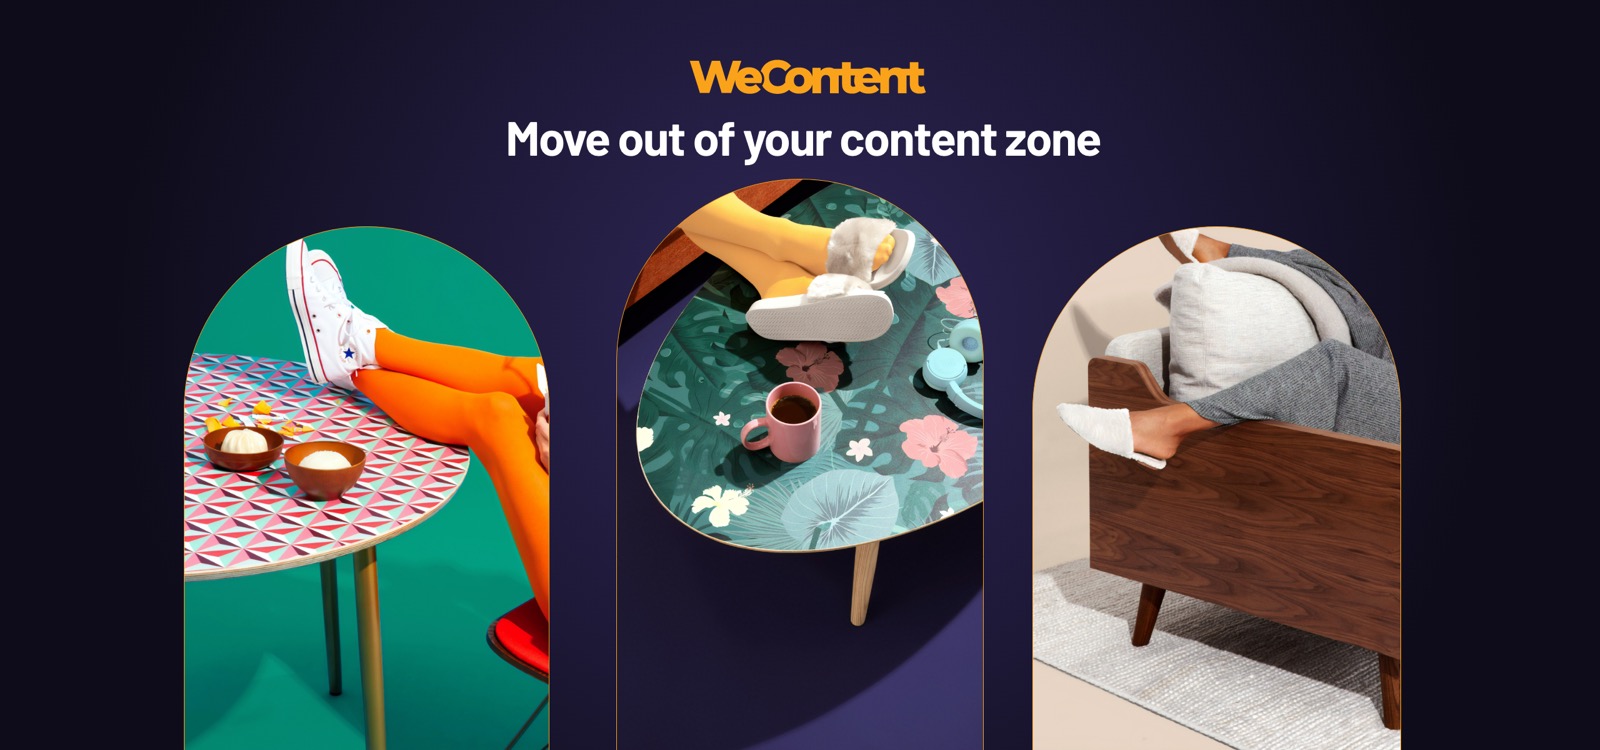 Concept unic în Europa: WeContent organizează primul festival outdoor de content marketing, aducând împreună cei mai buni experți internaționali